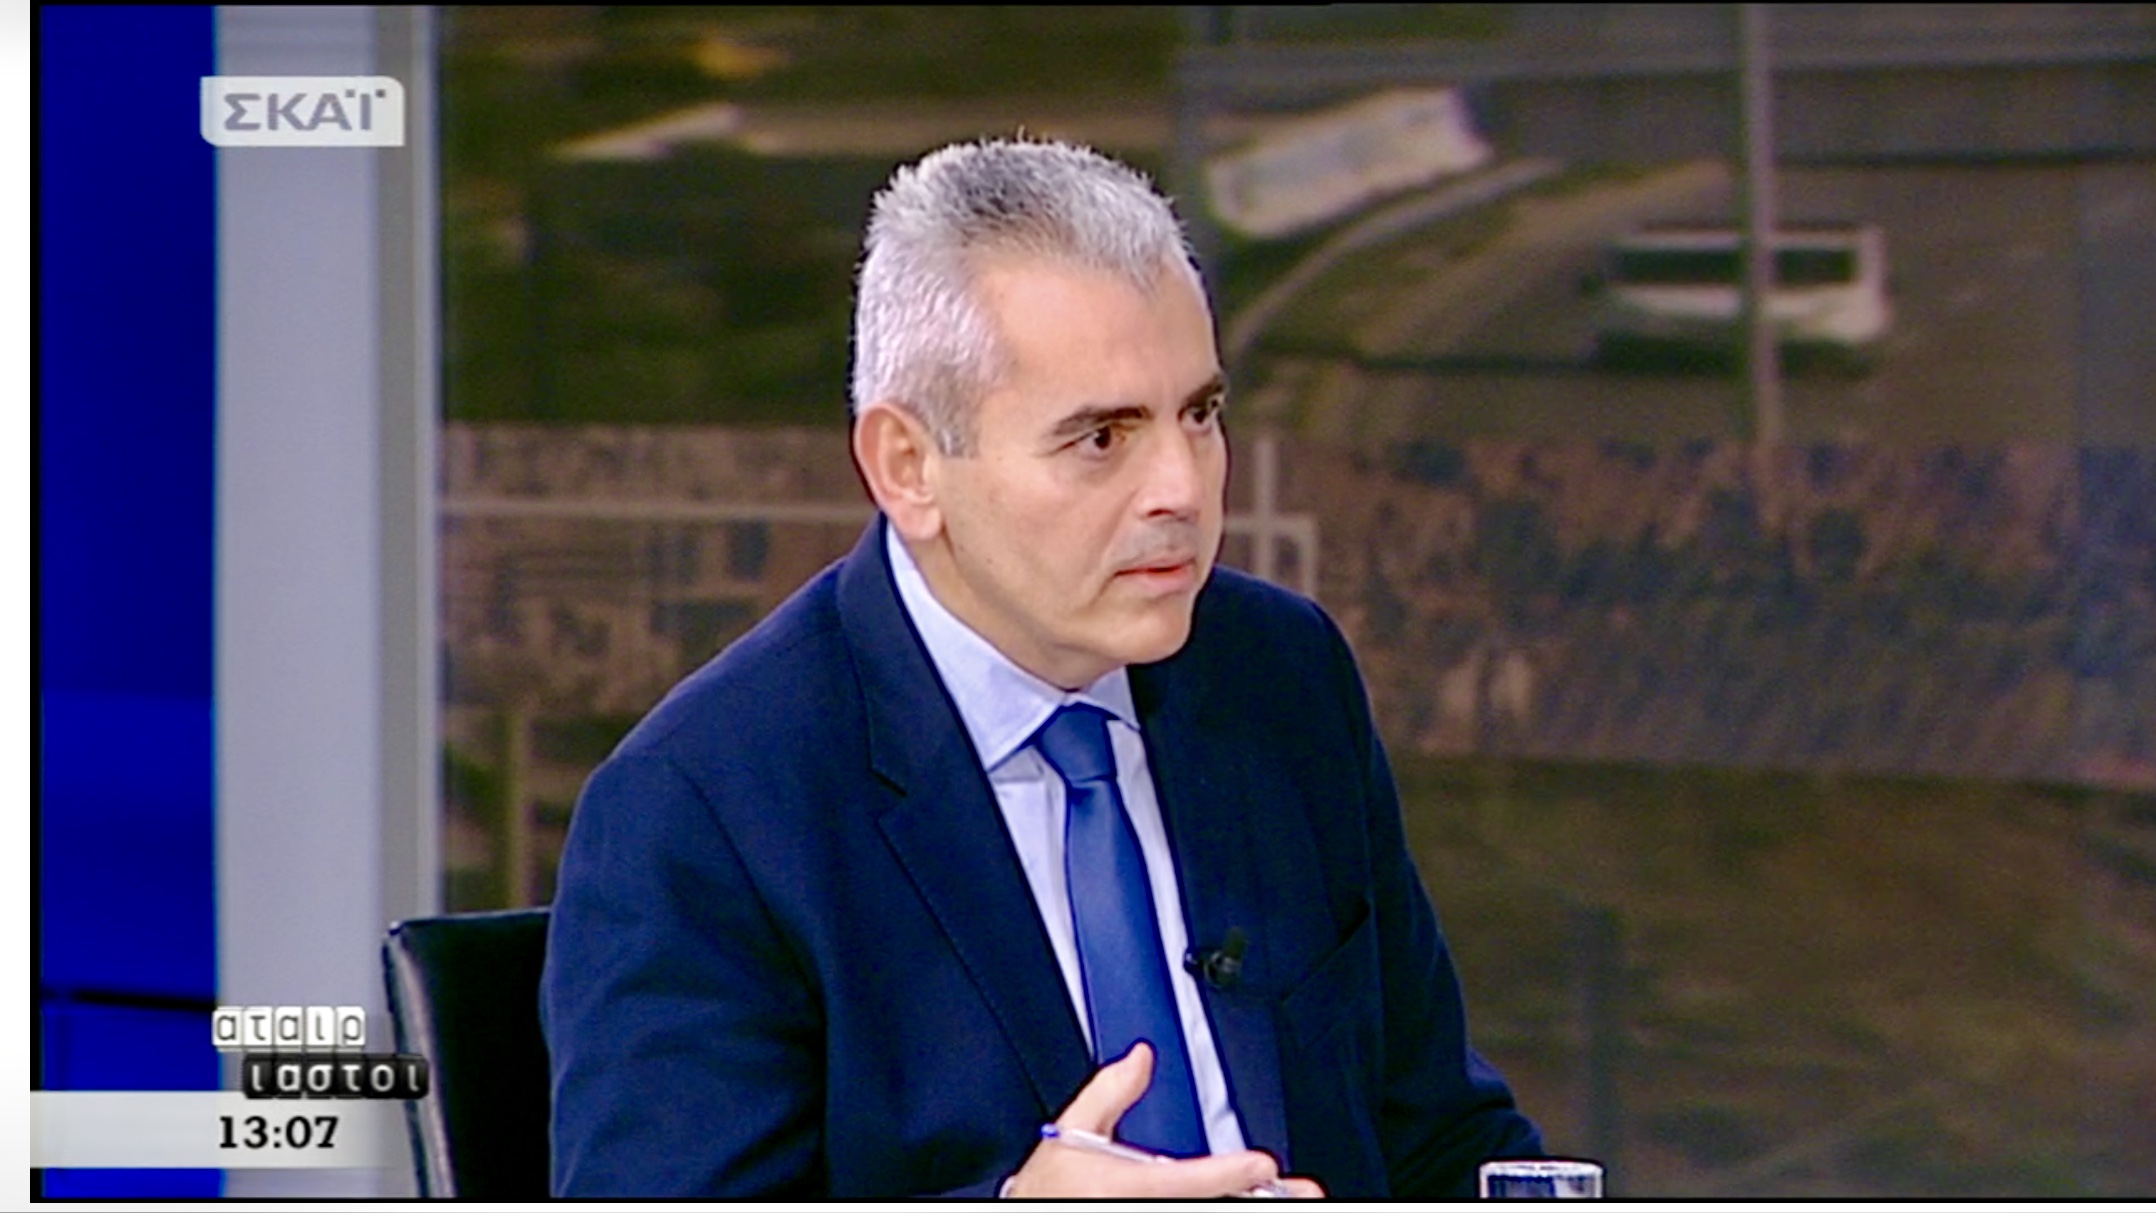 Χαρακόπουλος: "Κυβέρνηση «όλα τα σφάζω όλα τα μαχαιρώνω!»"